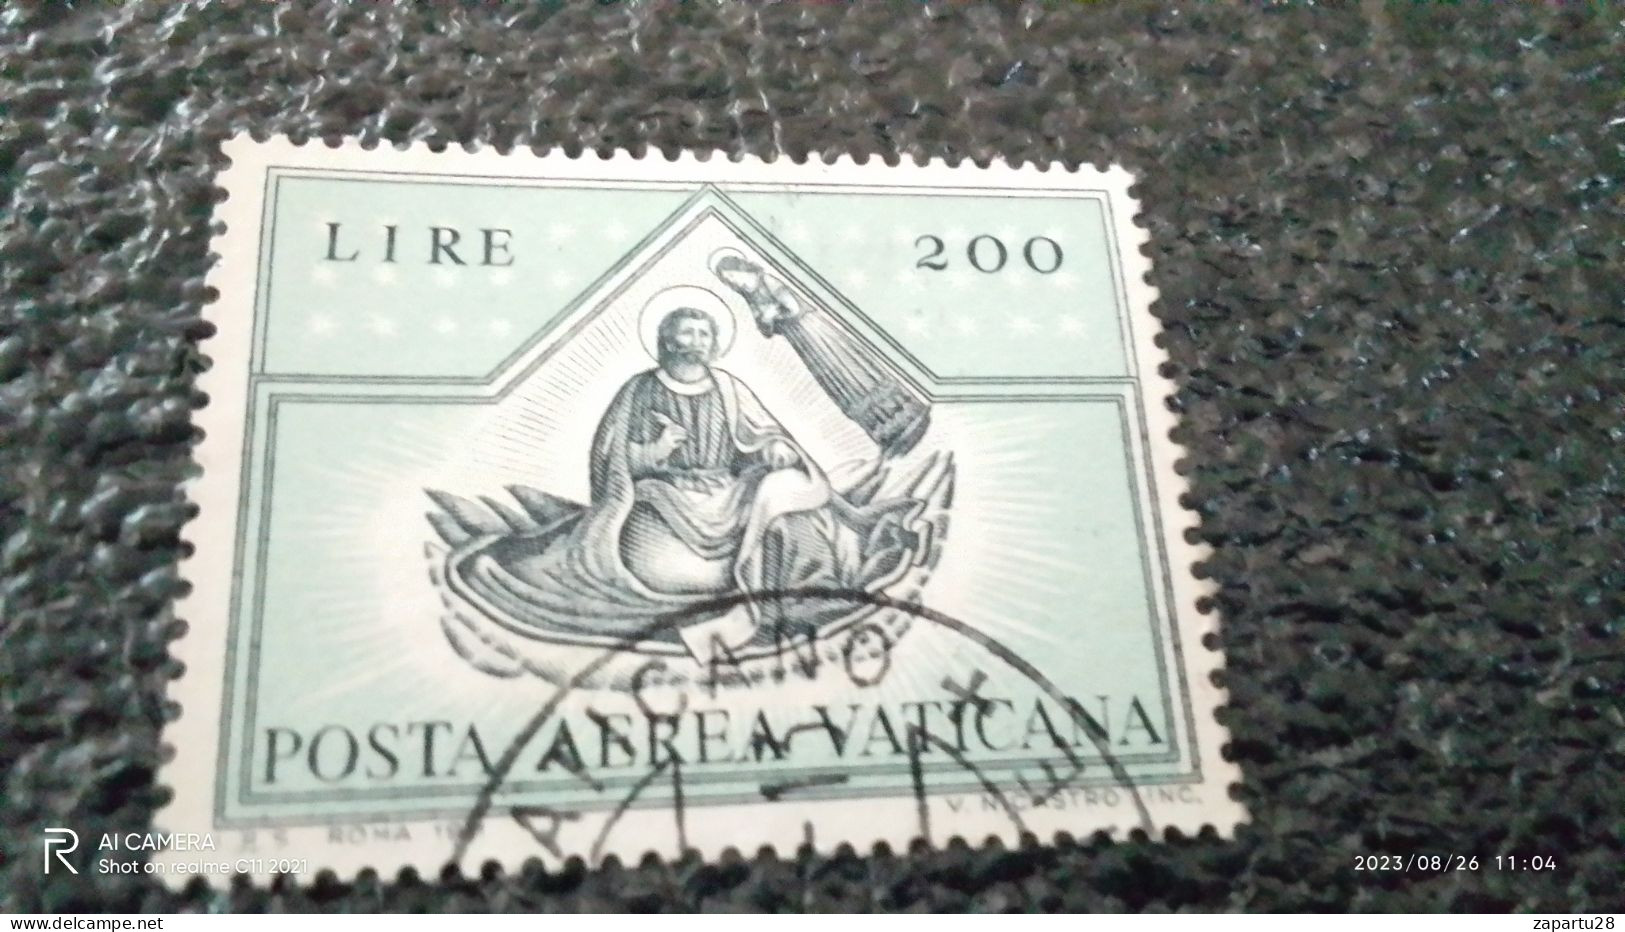 VATİKAN-1960-90     200L       USED - Used Stamps